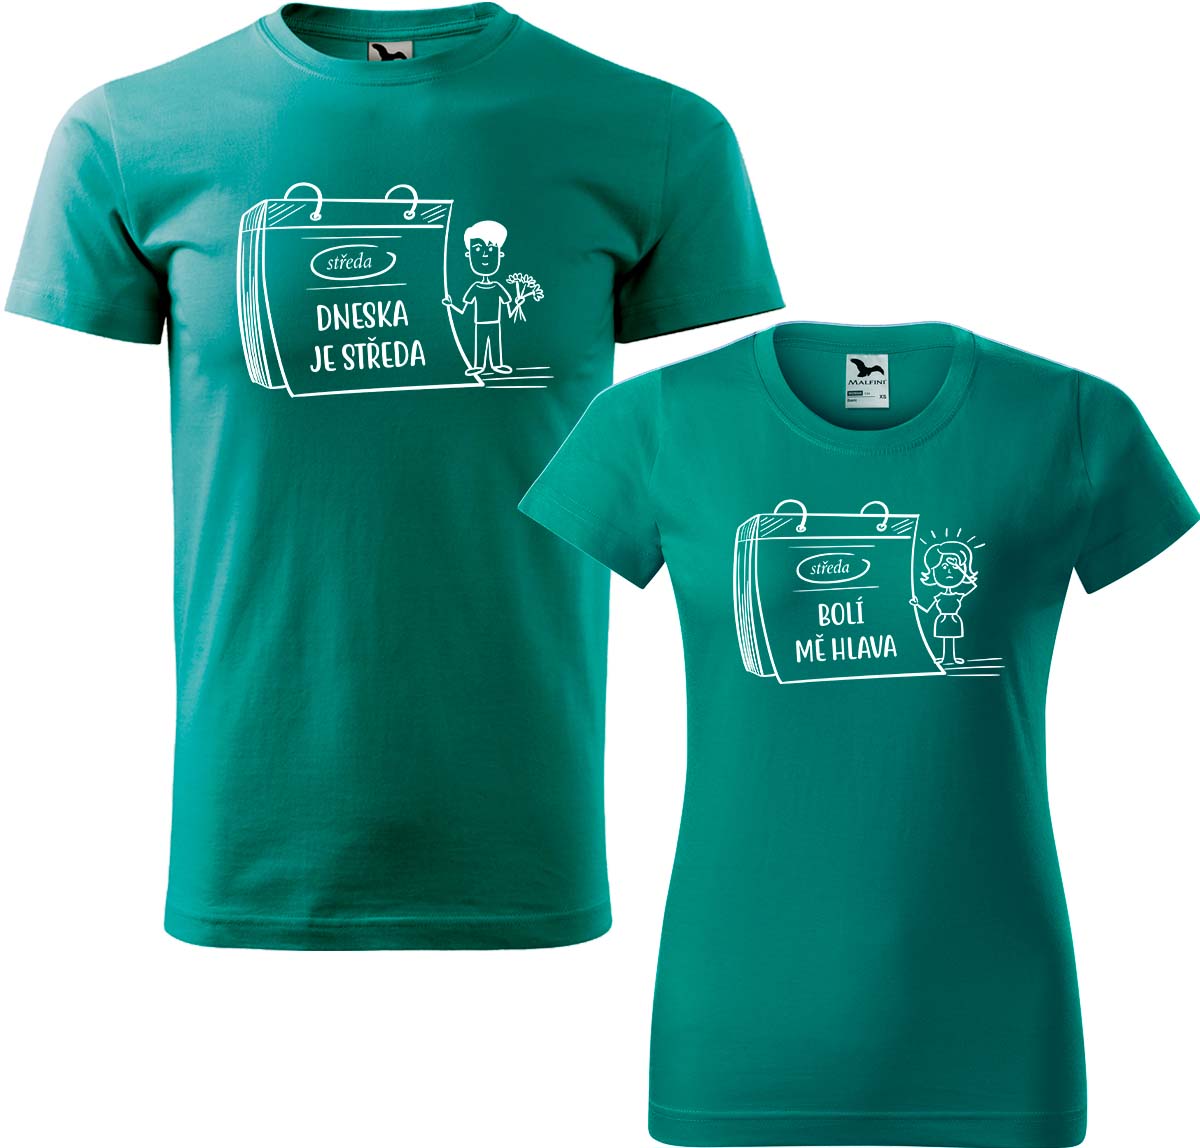 Trička pro páry - Dneska je středa Barva: Emerald (19), Velikost dámské tričko: S, Velikost pánské tričko: M